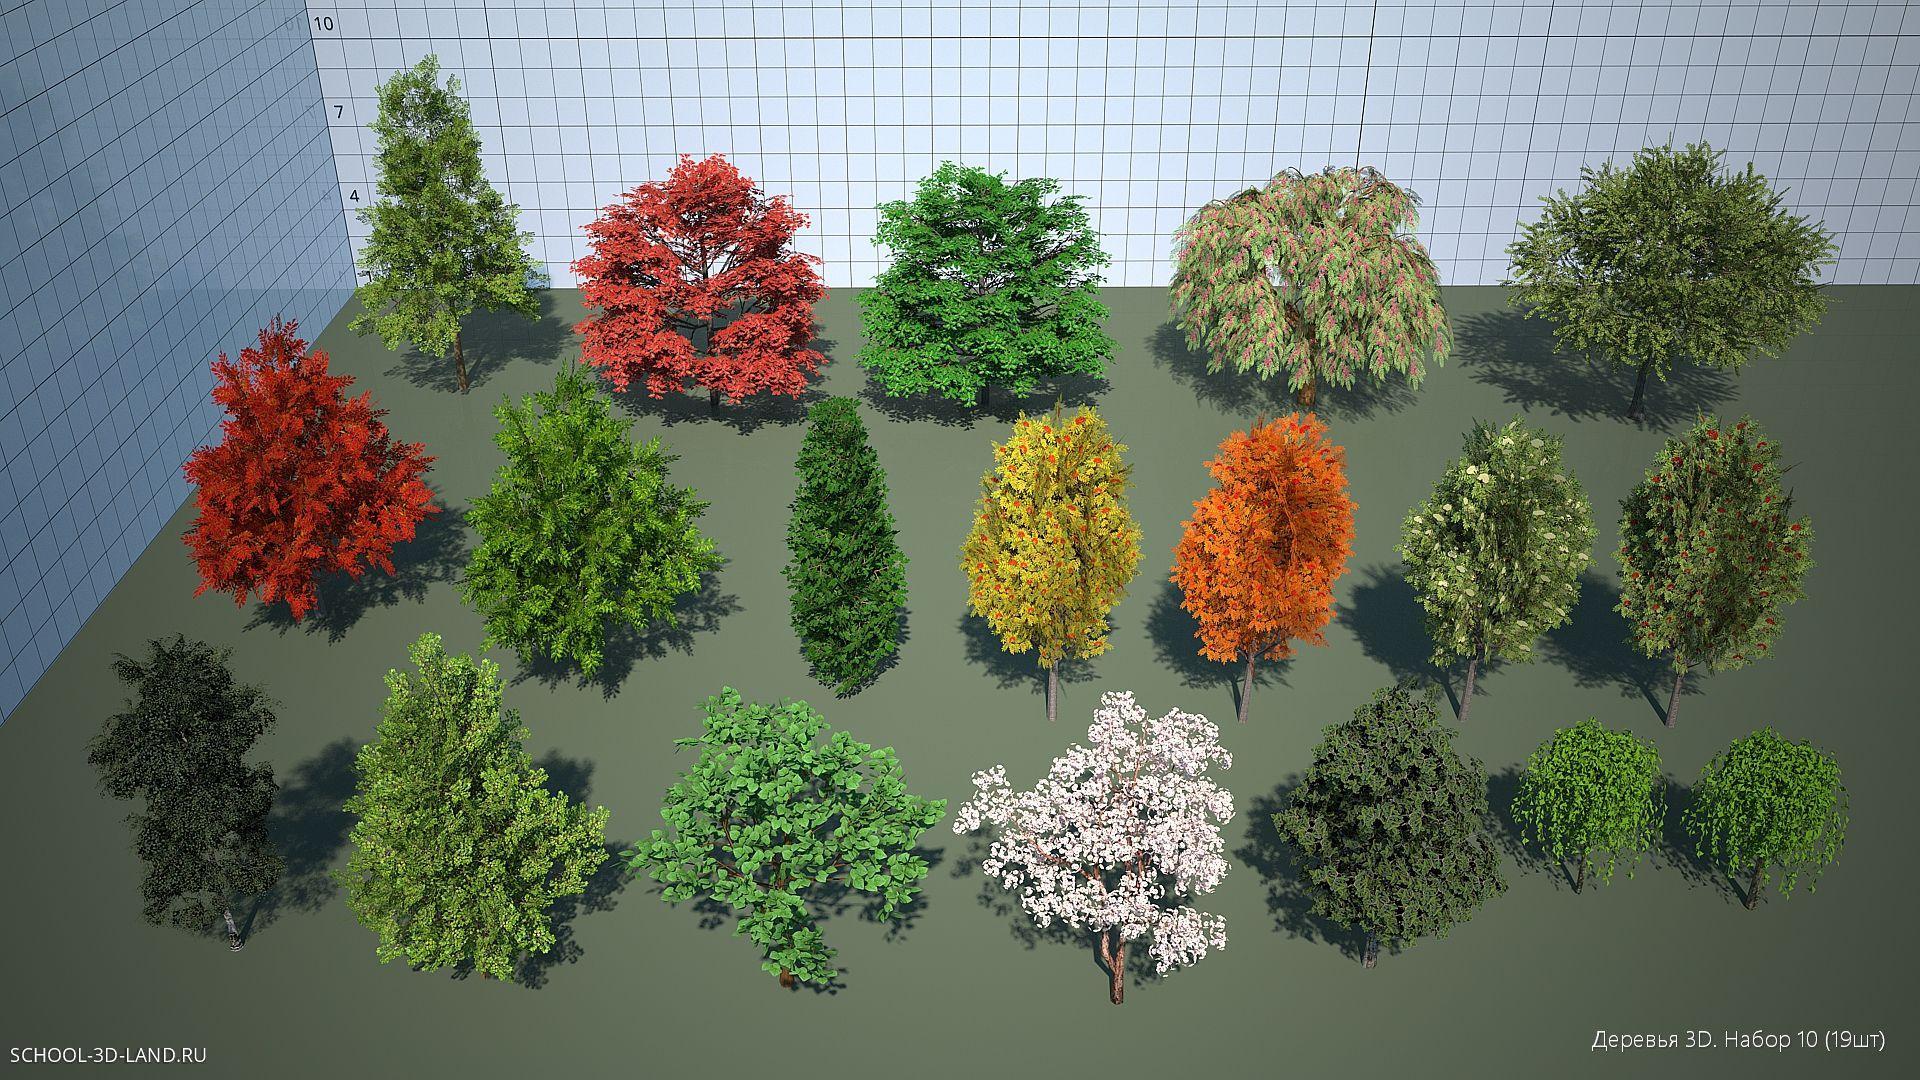 Деревья 3D. Набор 10 (19шт)